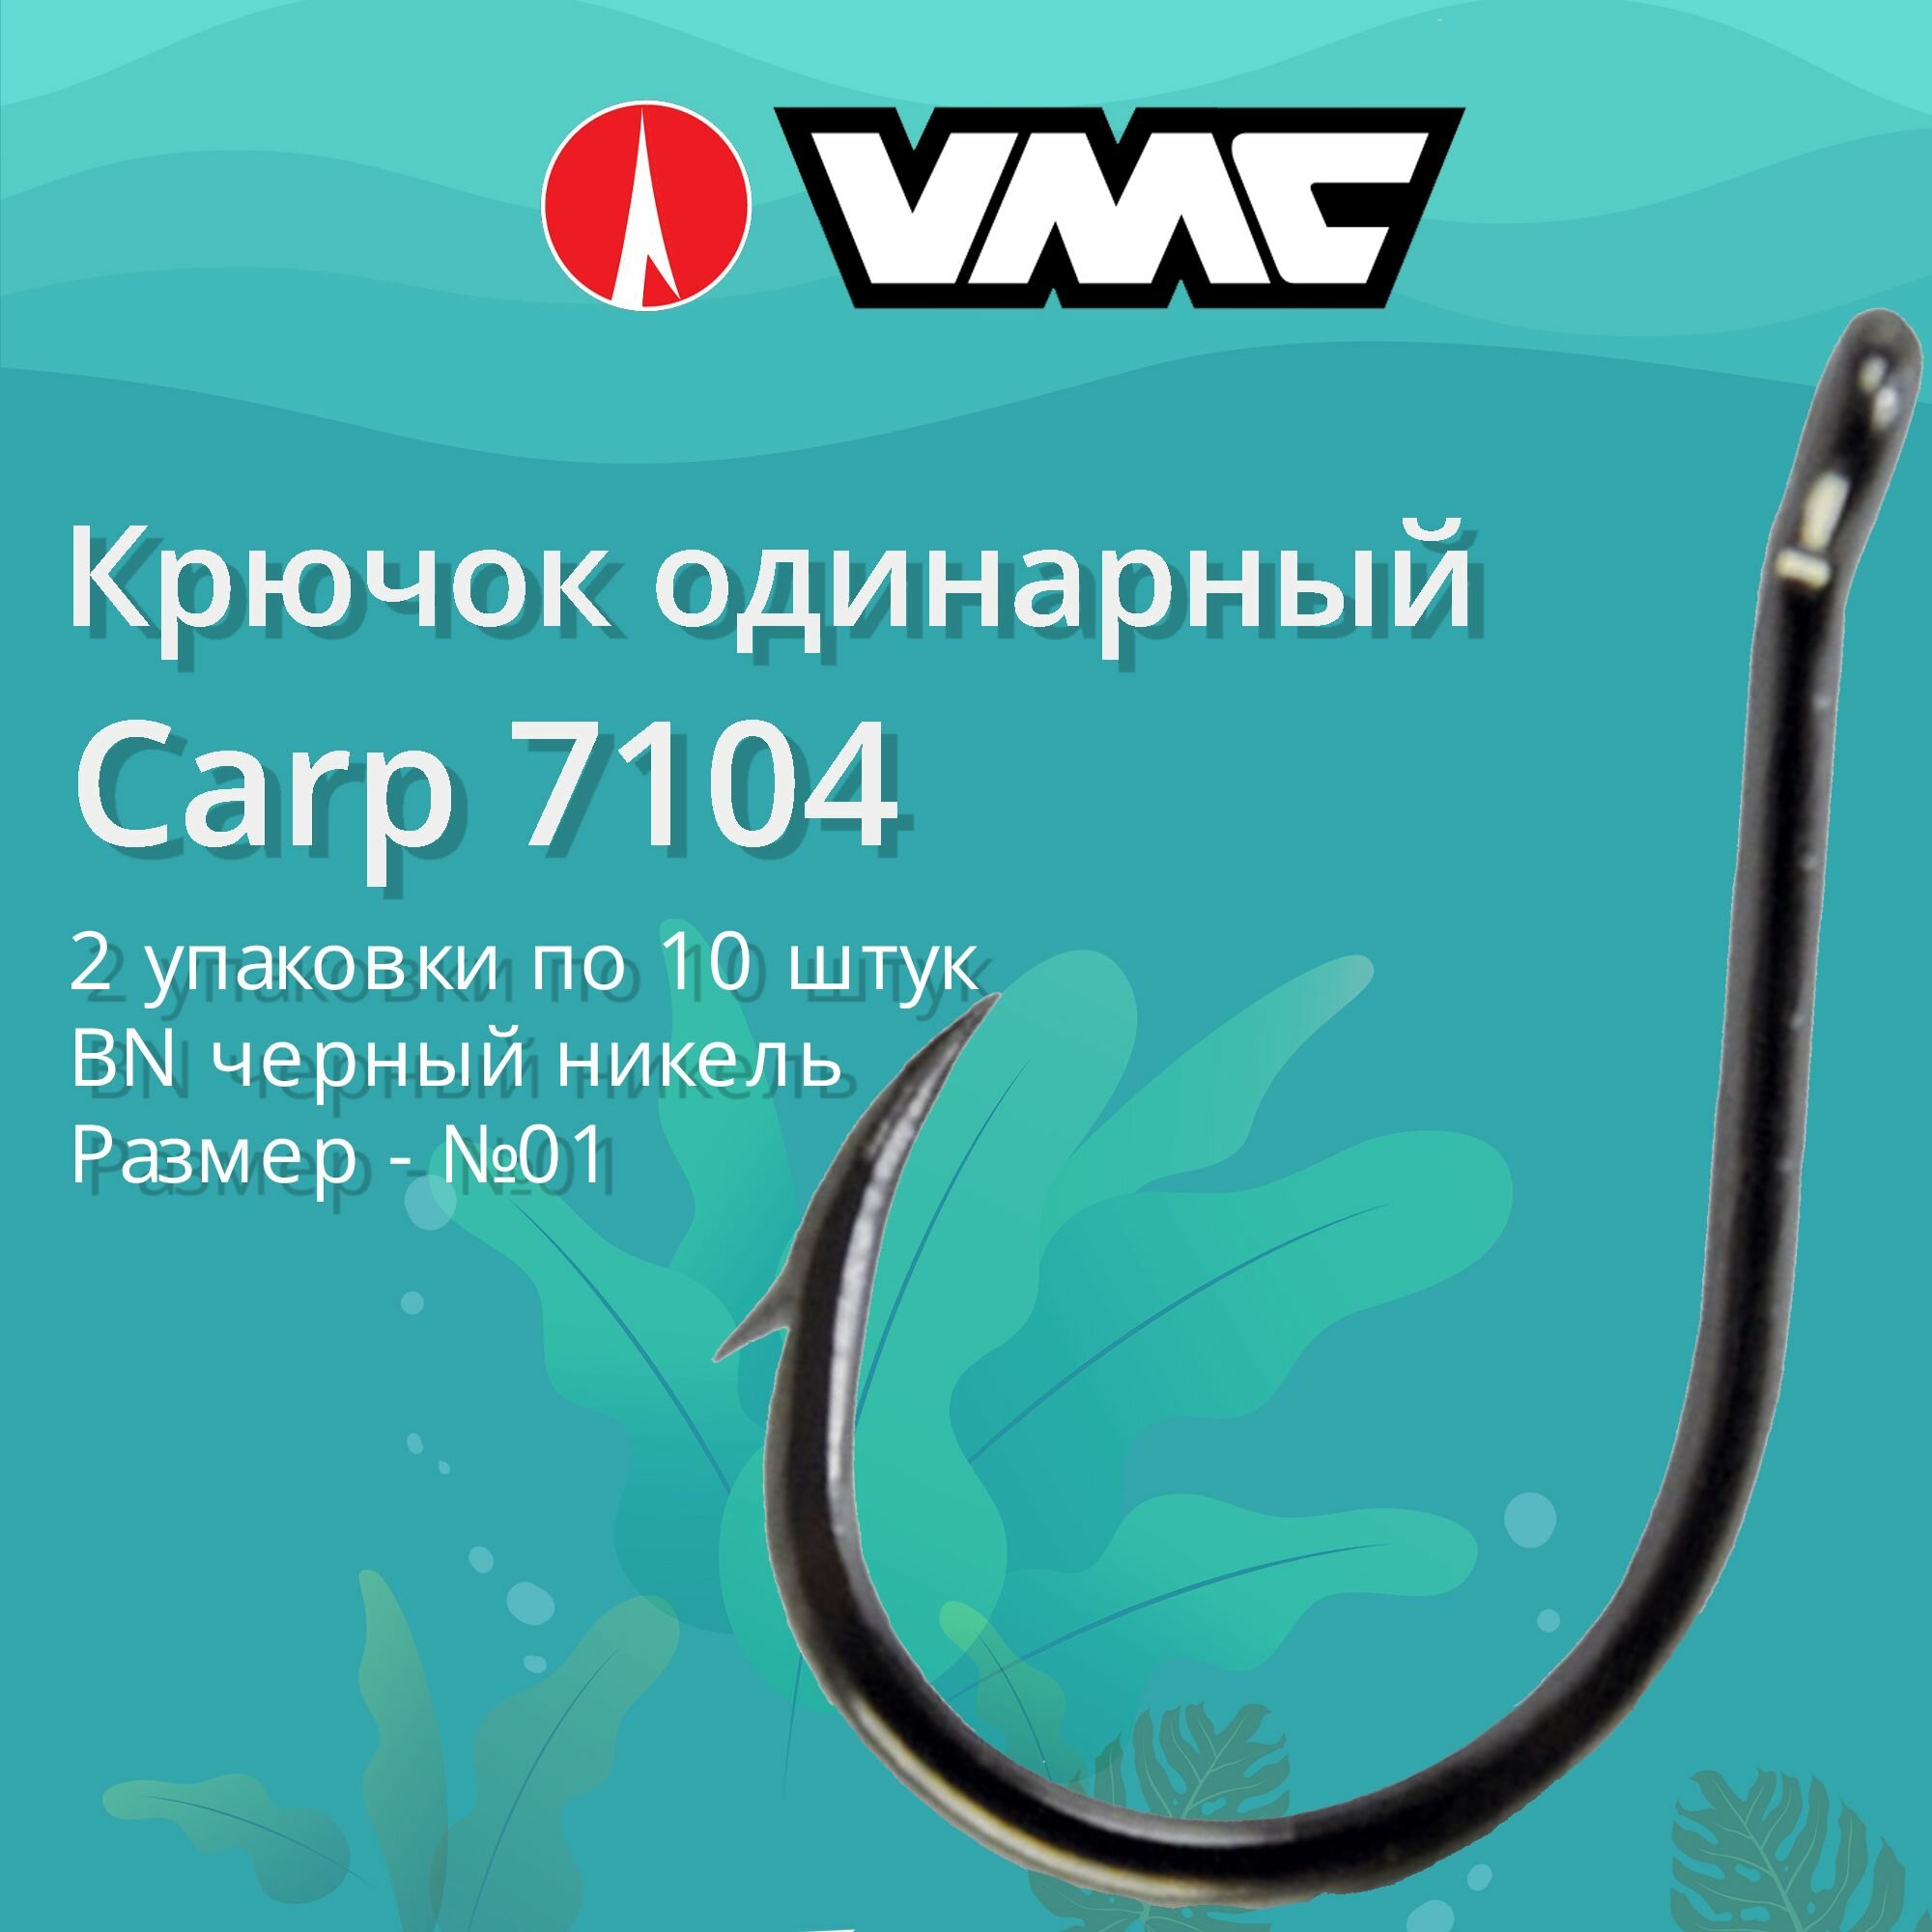 Крючки для рыбалки (одинарный) VMC Carp 7104 BN (черн. никель) №01, 2 упаковки по 10 штук